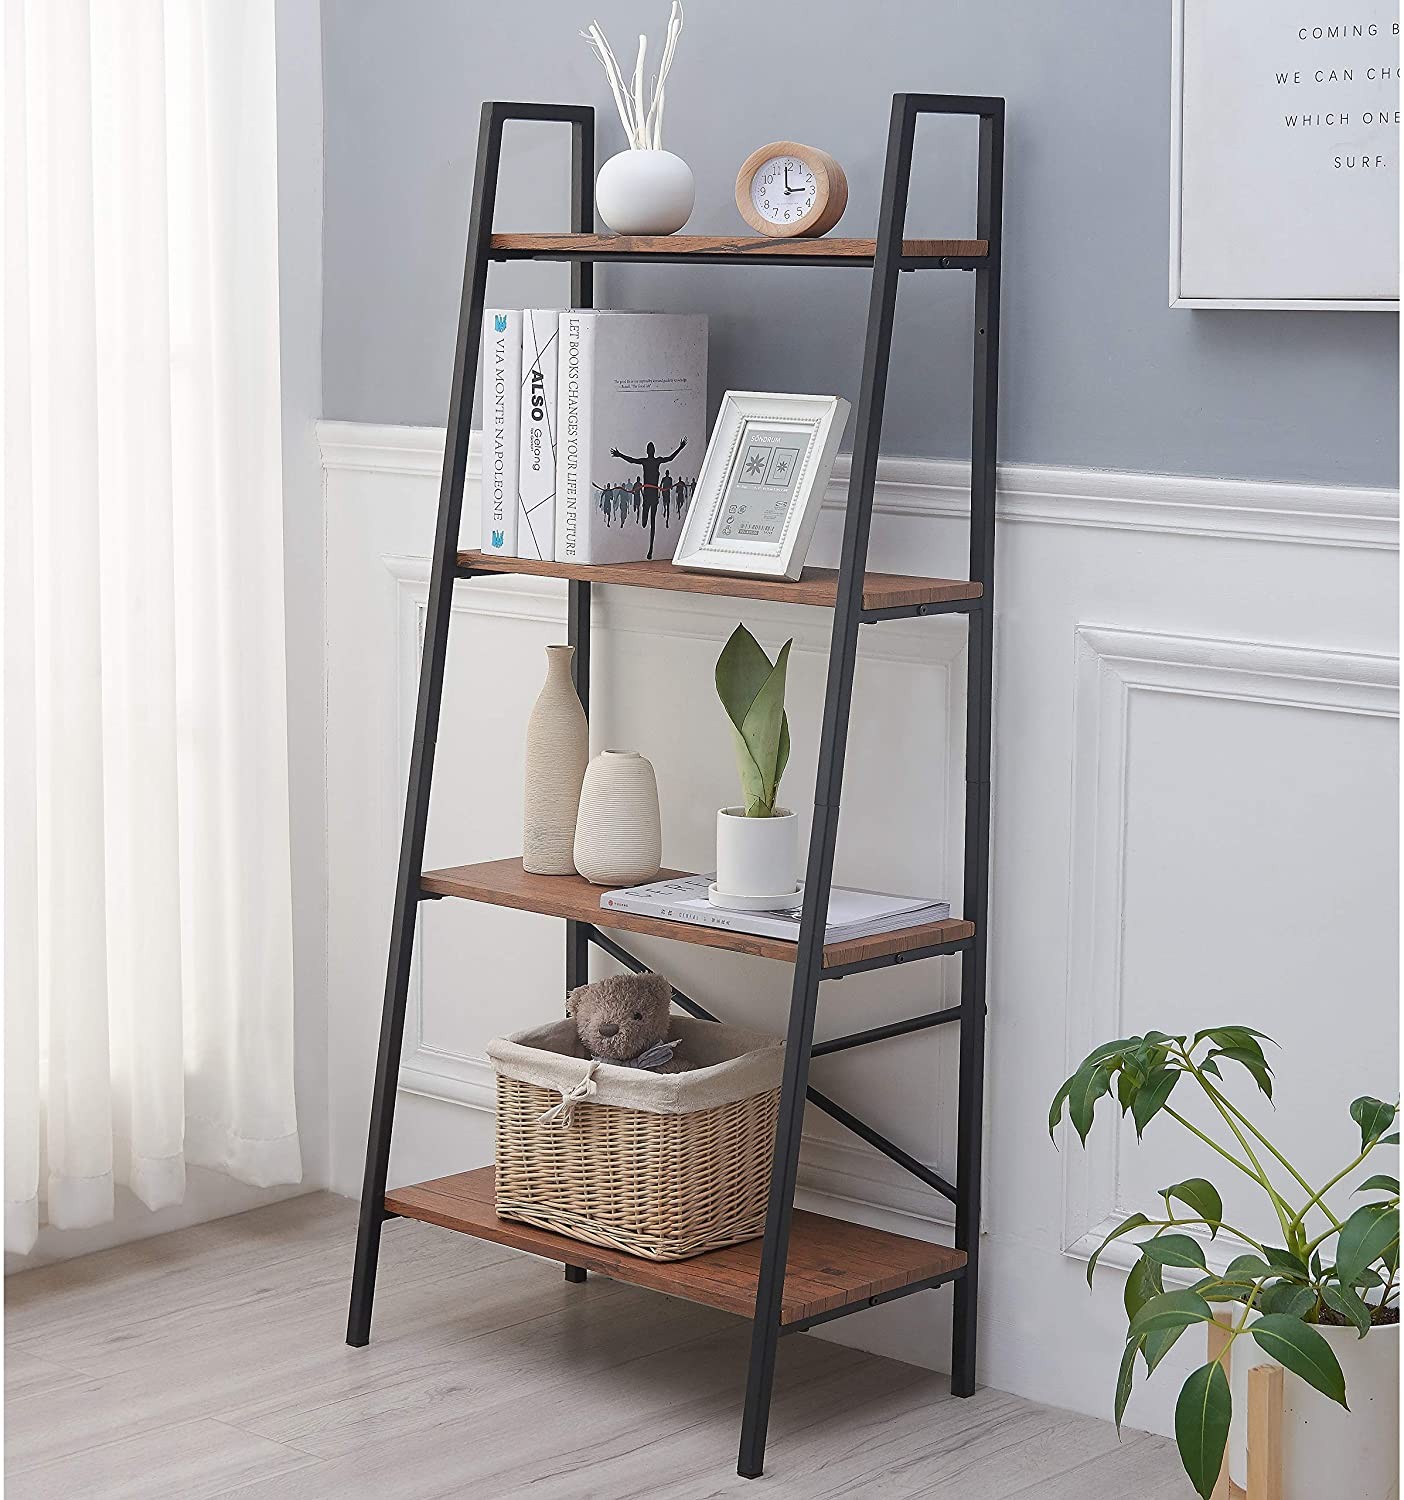 DEWEL 4-Shelf Ladder Shelf